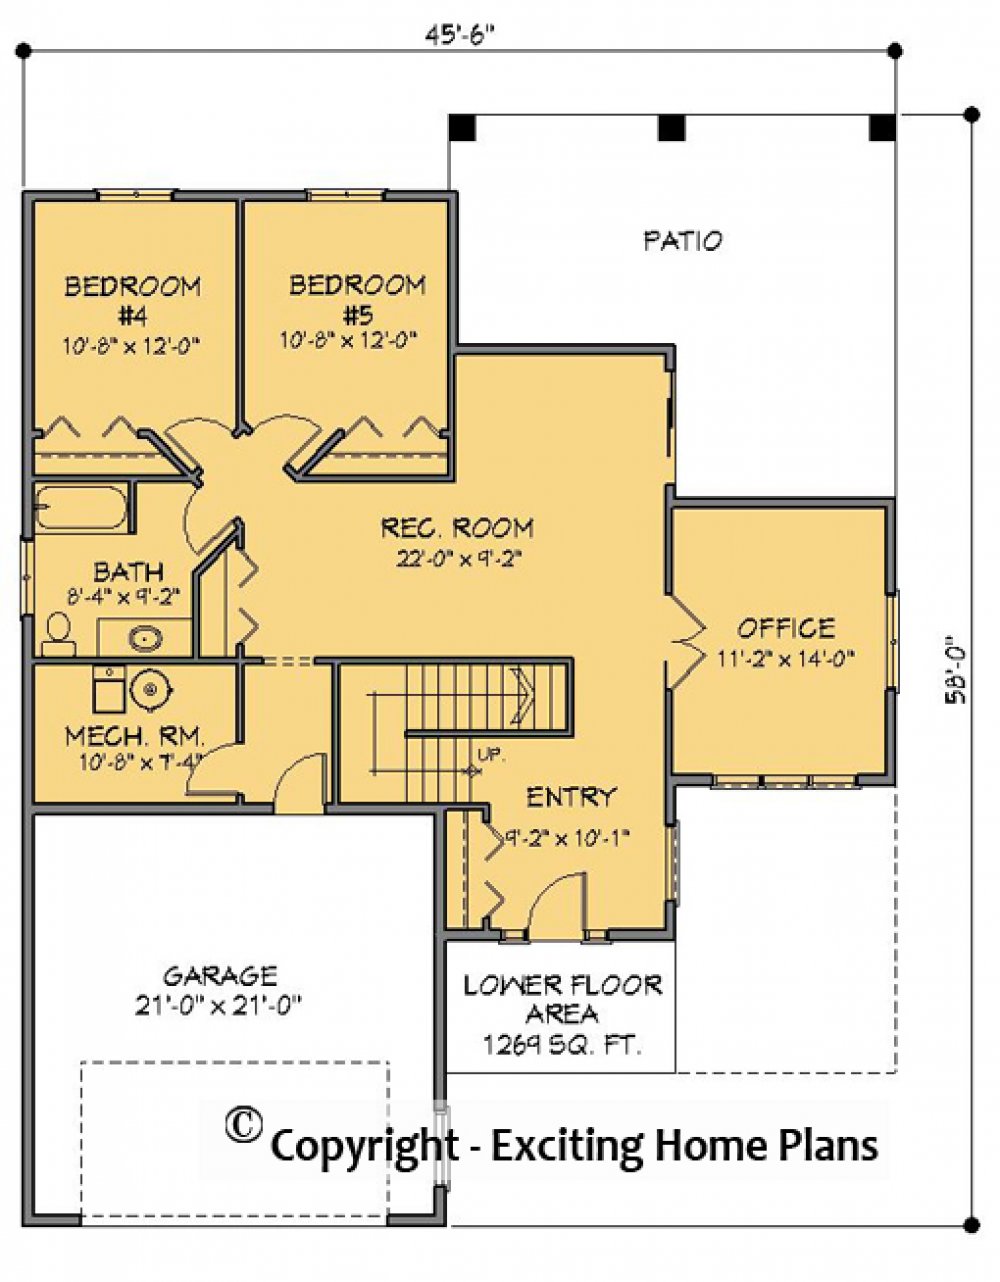 House Plan E1644-10 Lower Floor Plan